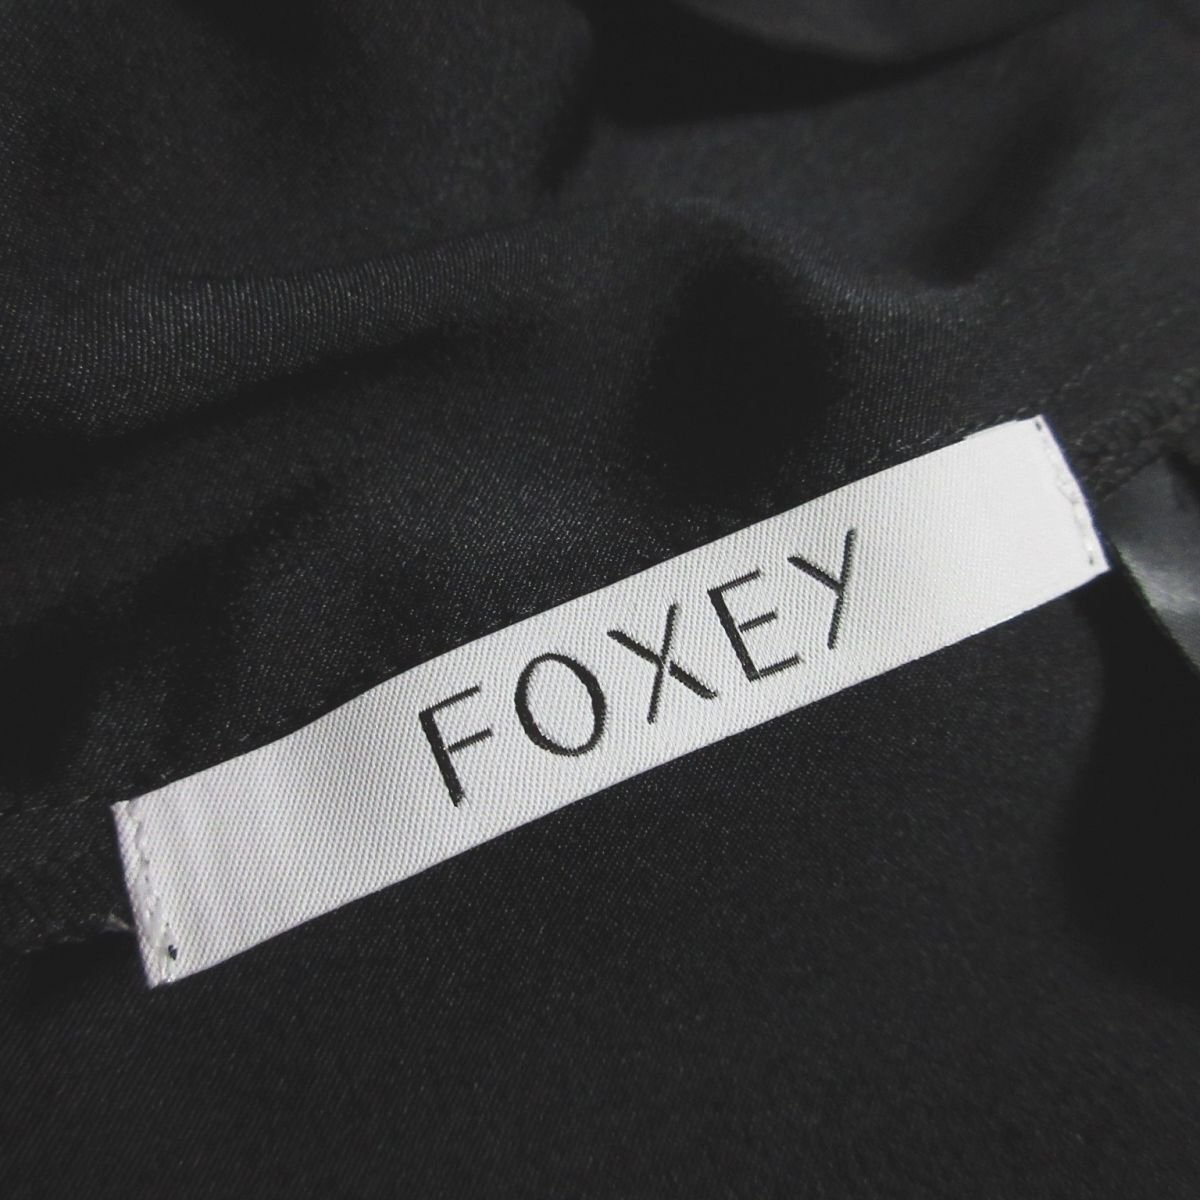 新品同様 FOXEY フォクシー 2020年モデル 長袖 ルーシー シアー ブラウス カットソー 41121 38 ブラック ◆_画像6